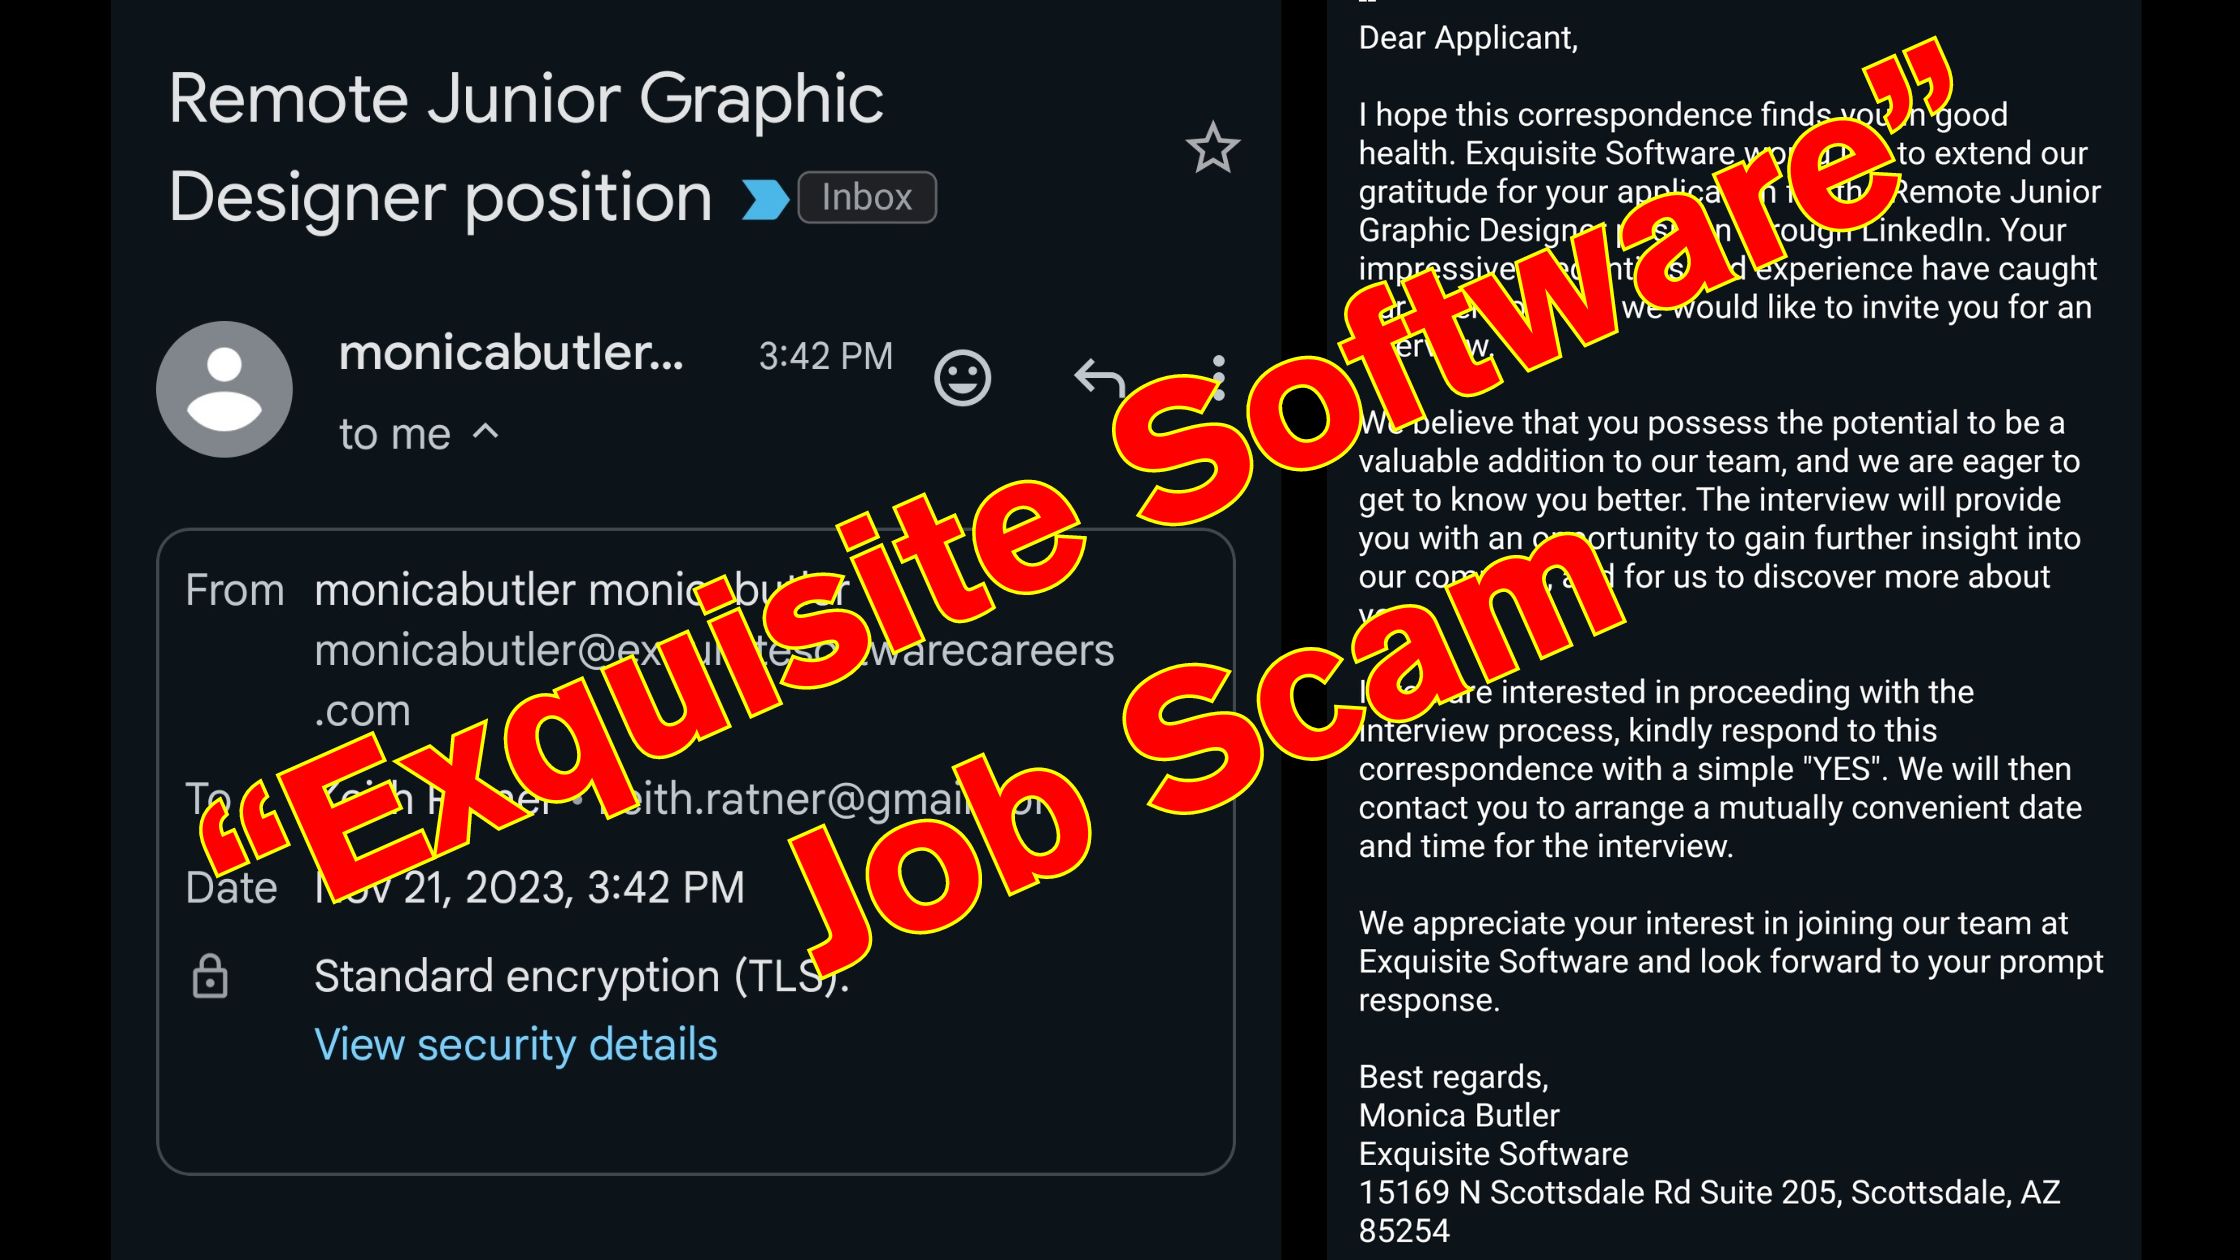 LinkedIn “Exquisite Software” Job Scam